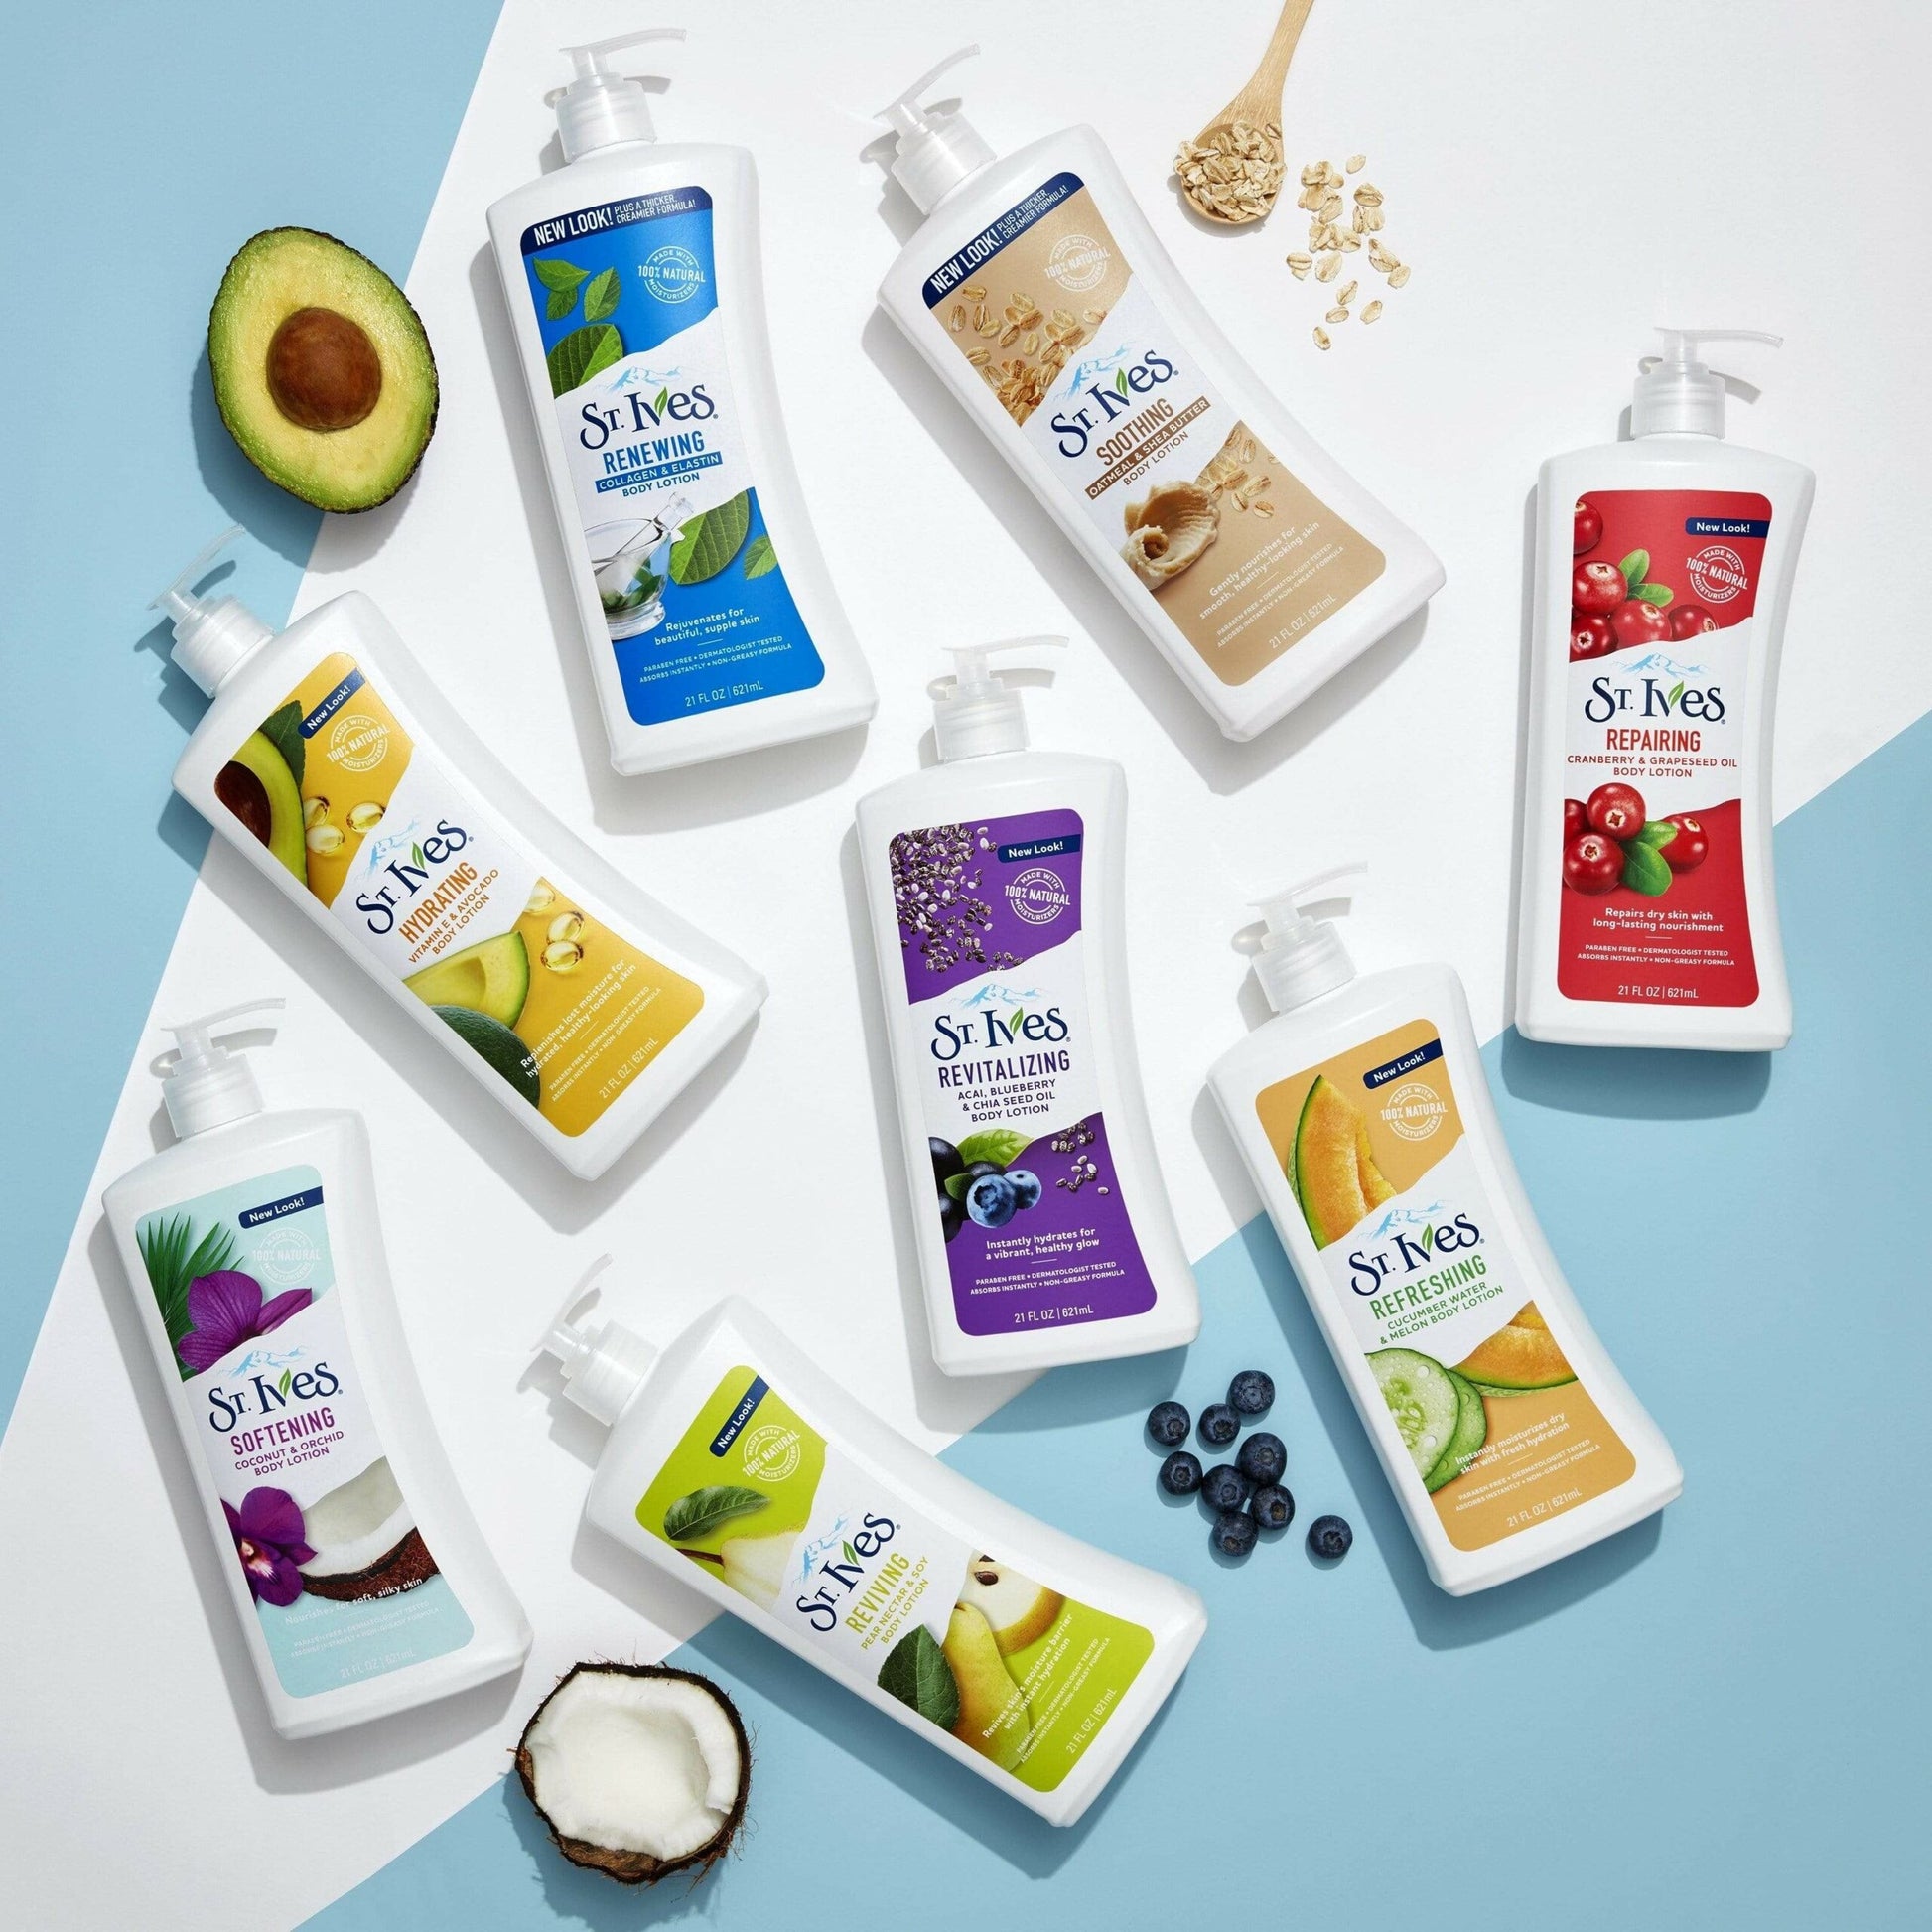 St. Ives hydrating vitamin E & avocado body lotion Minoustore